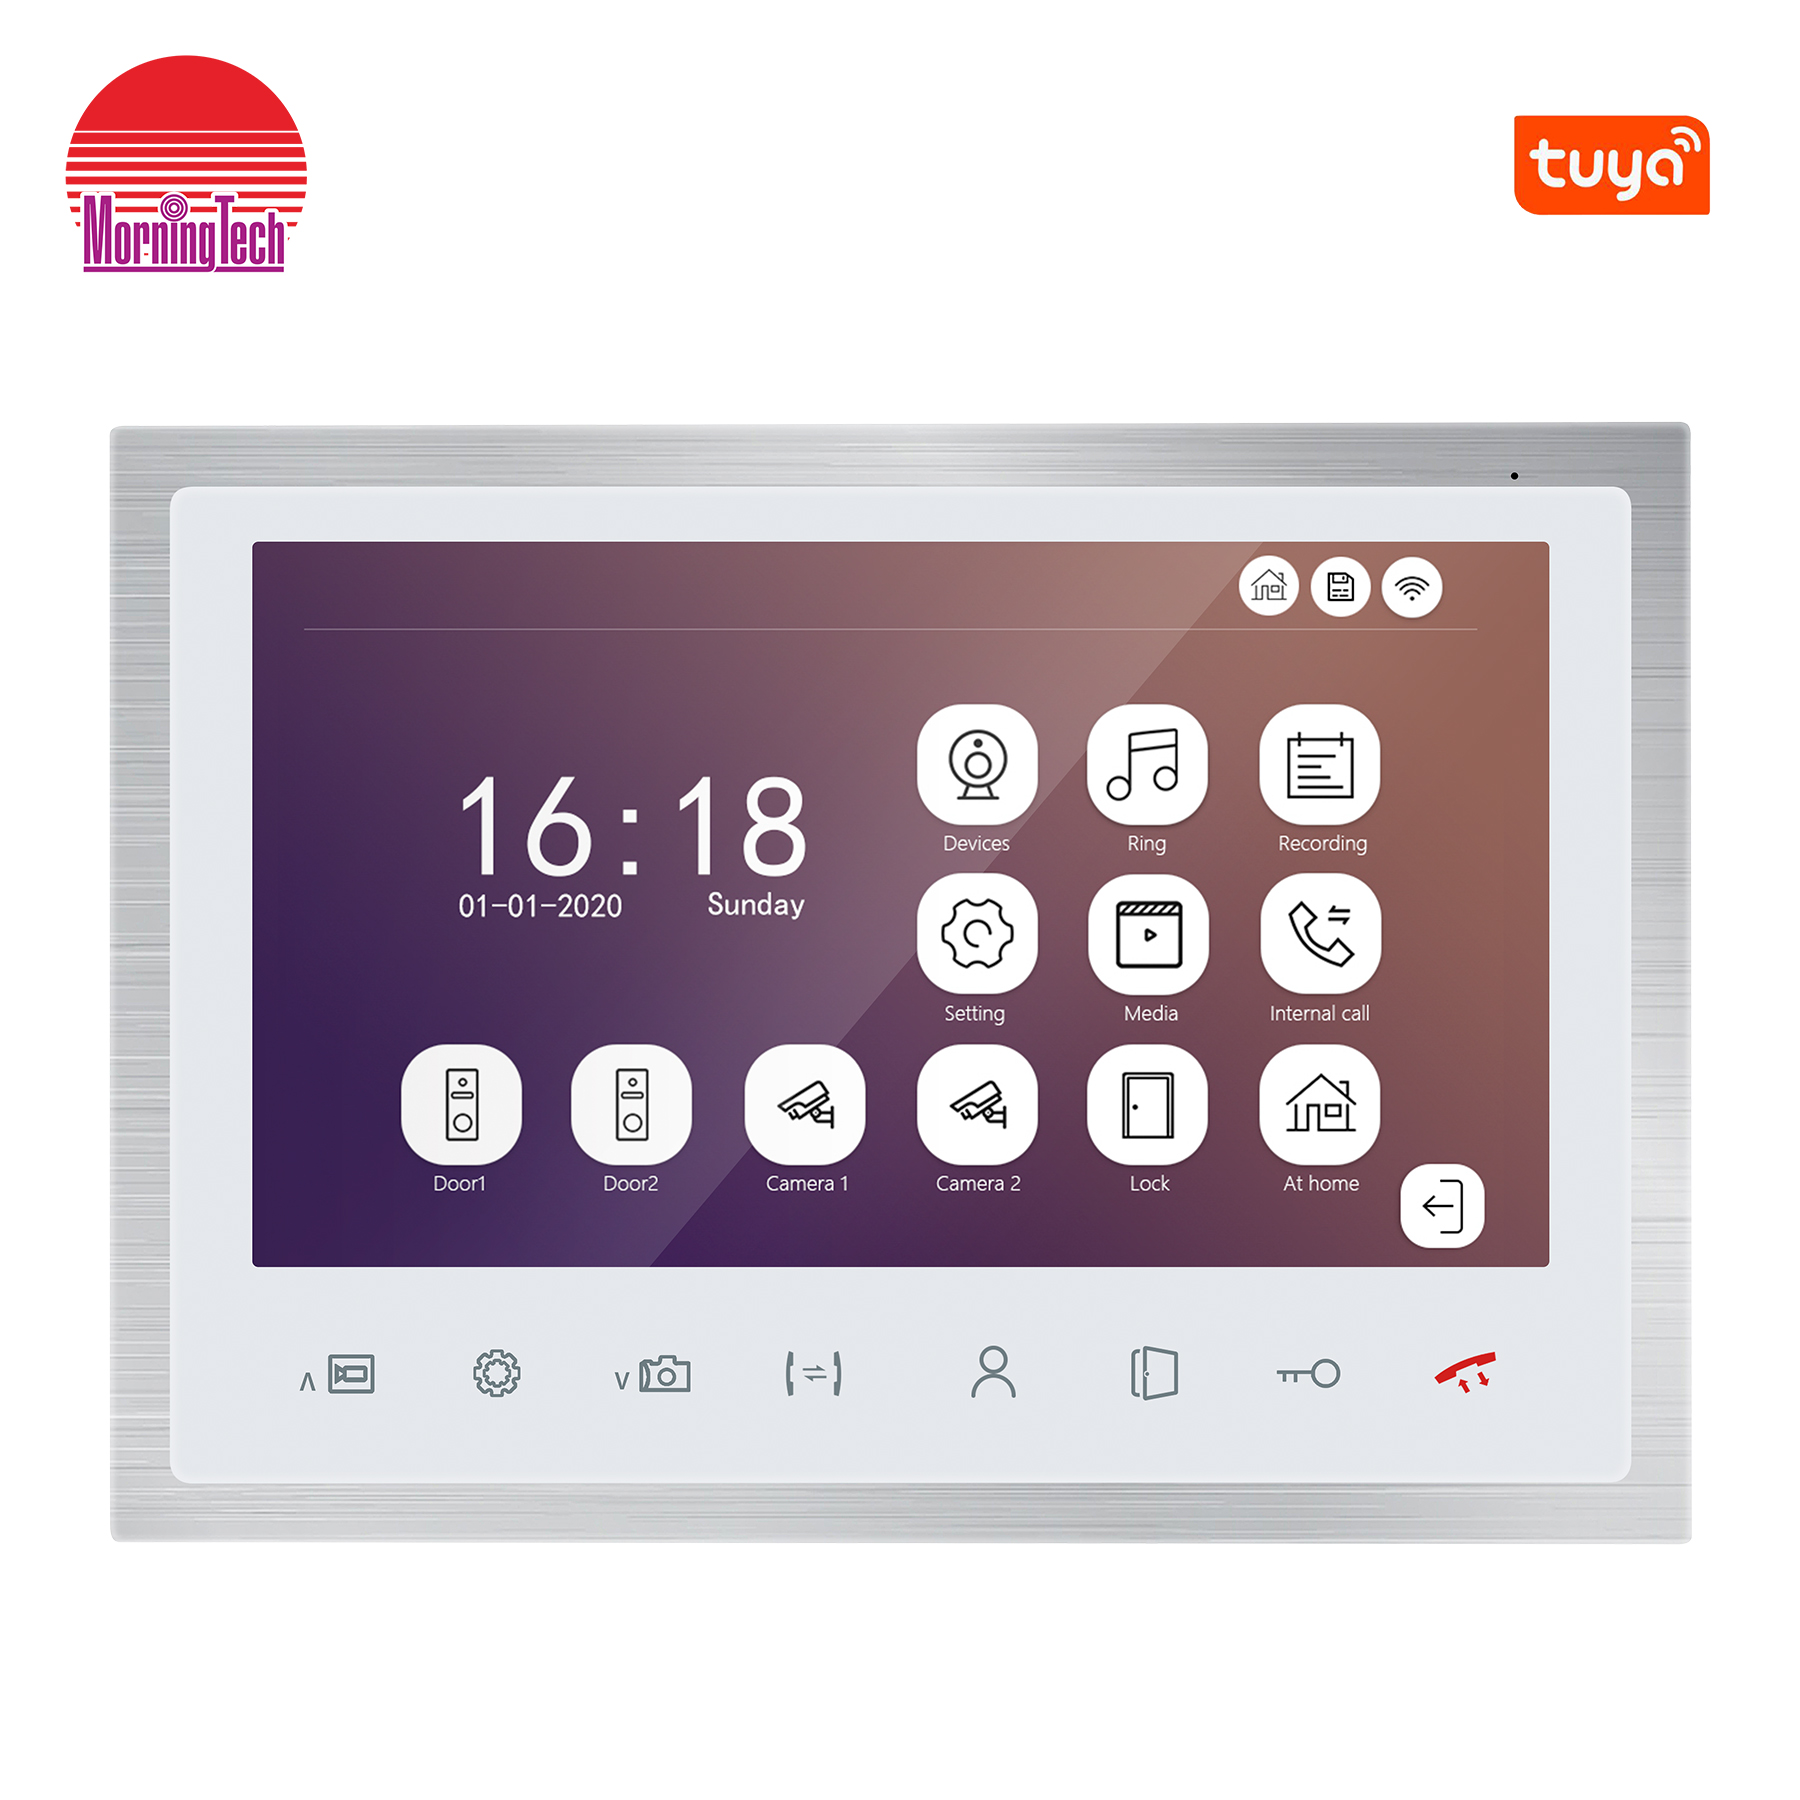 95102HP app control video door bell smart home devices video door phone remote unlock and monitoring video door intercom